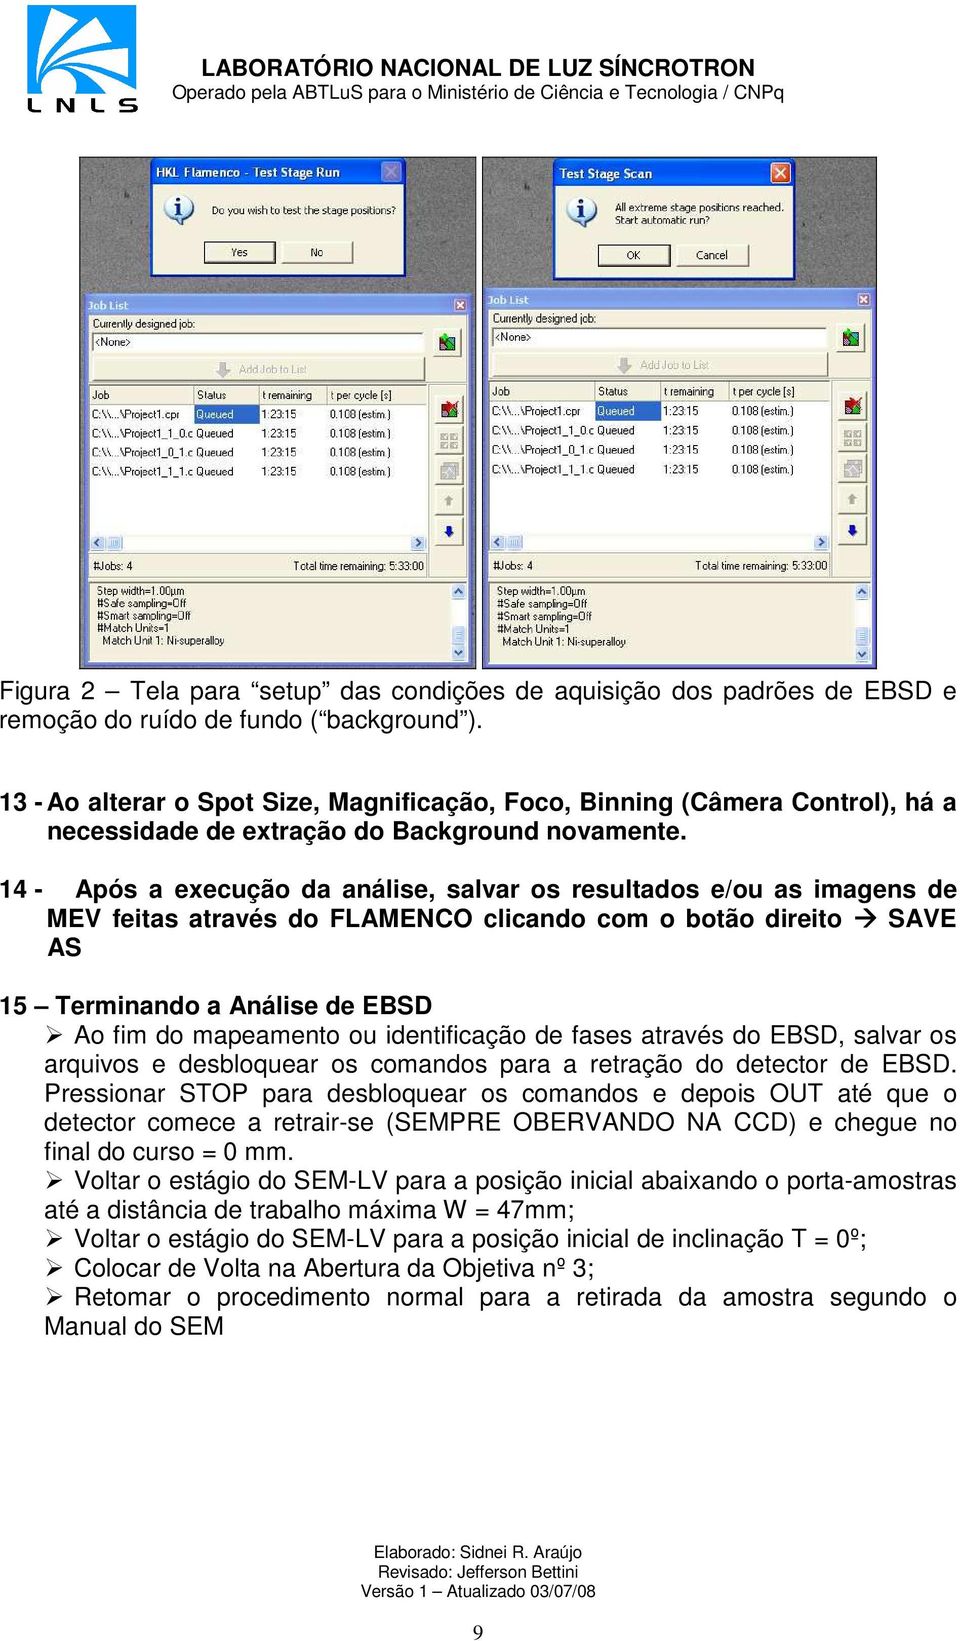 identificação de fases através do EBSD, salvar os arquivos e desbloquear os comandos para a retração do detector de EBSD.